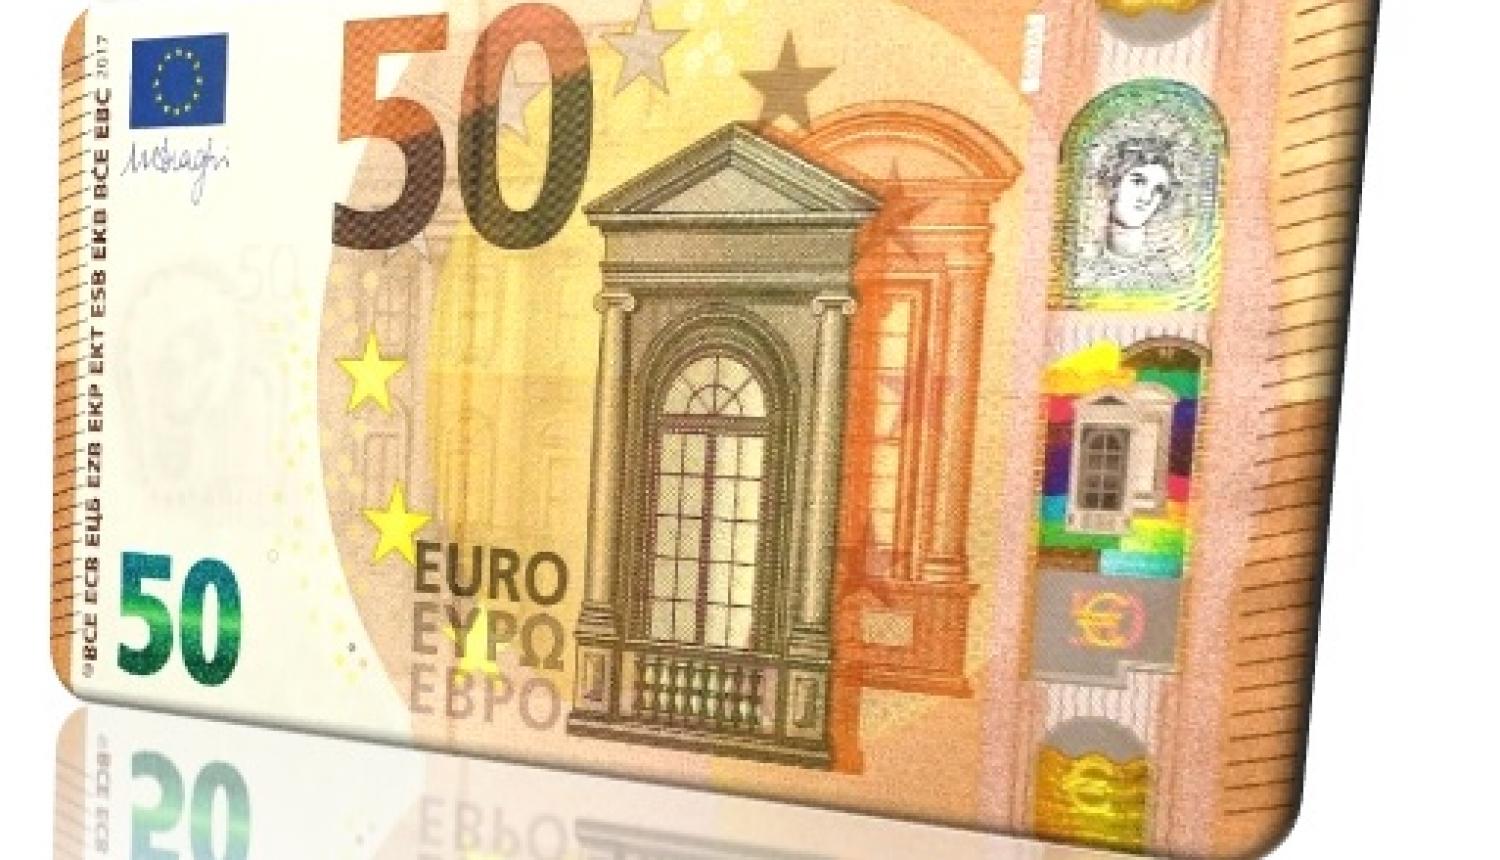 50 eiro banknote